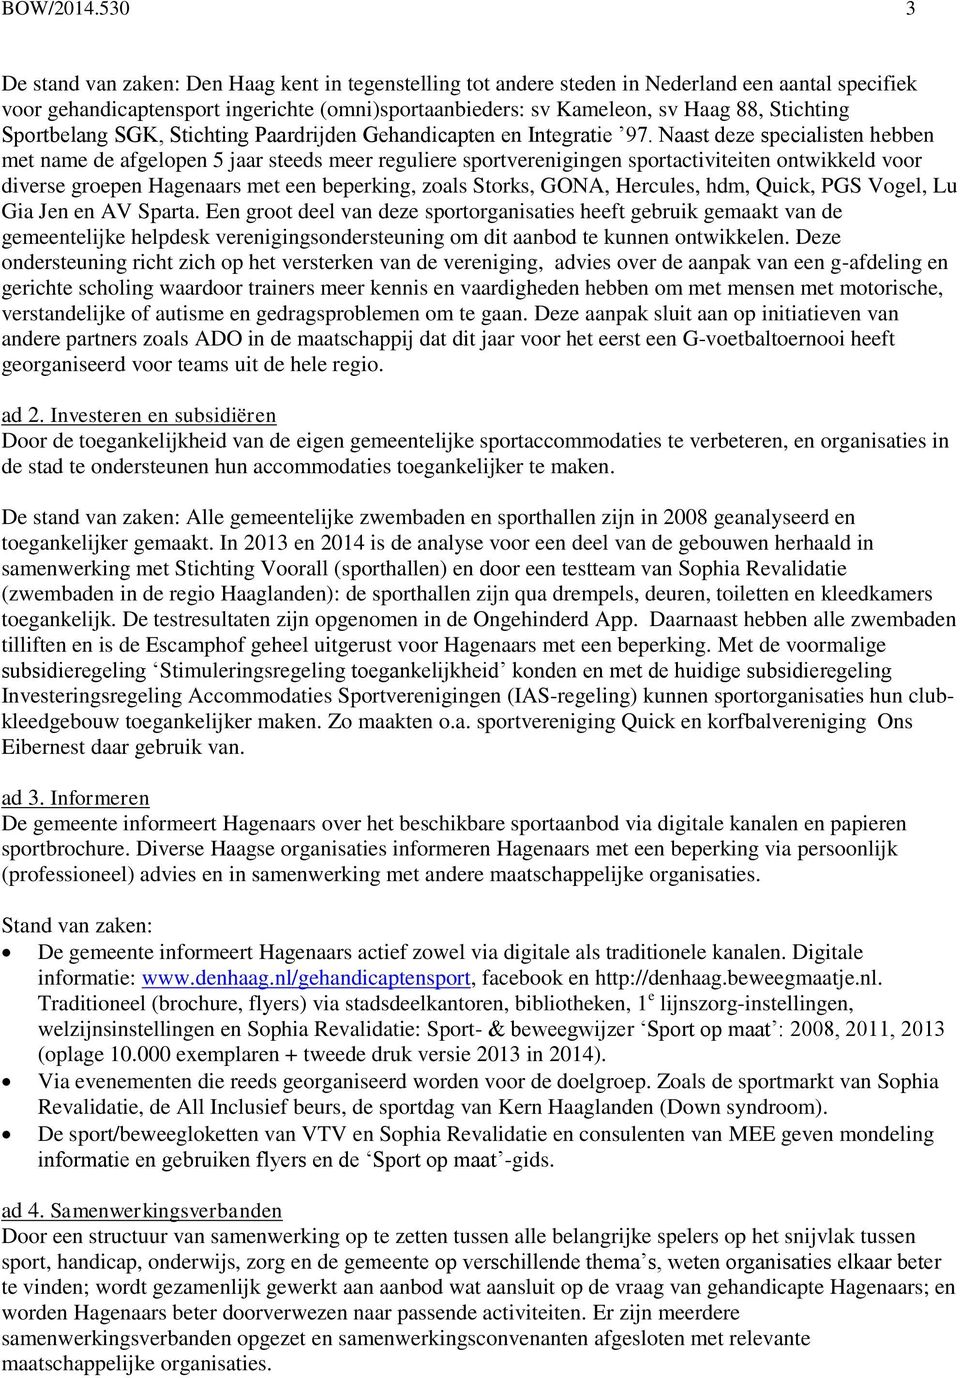 Stichting Sportbelang SGK, Stichting Paardrijden Gehandicapten en Integratie 97.